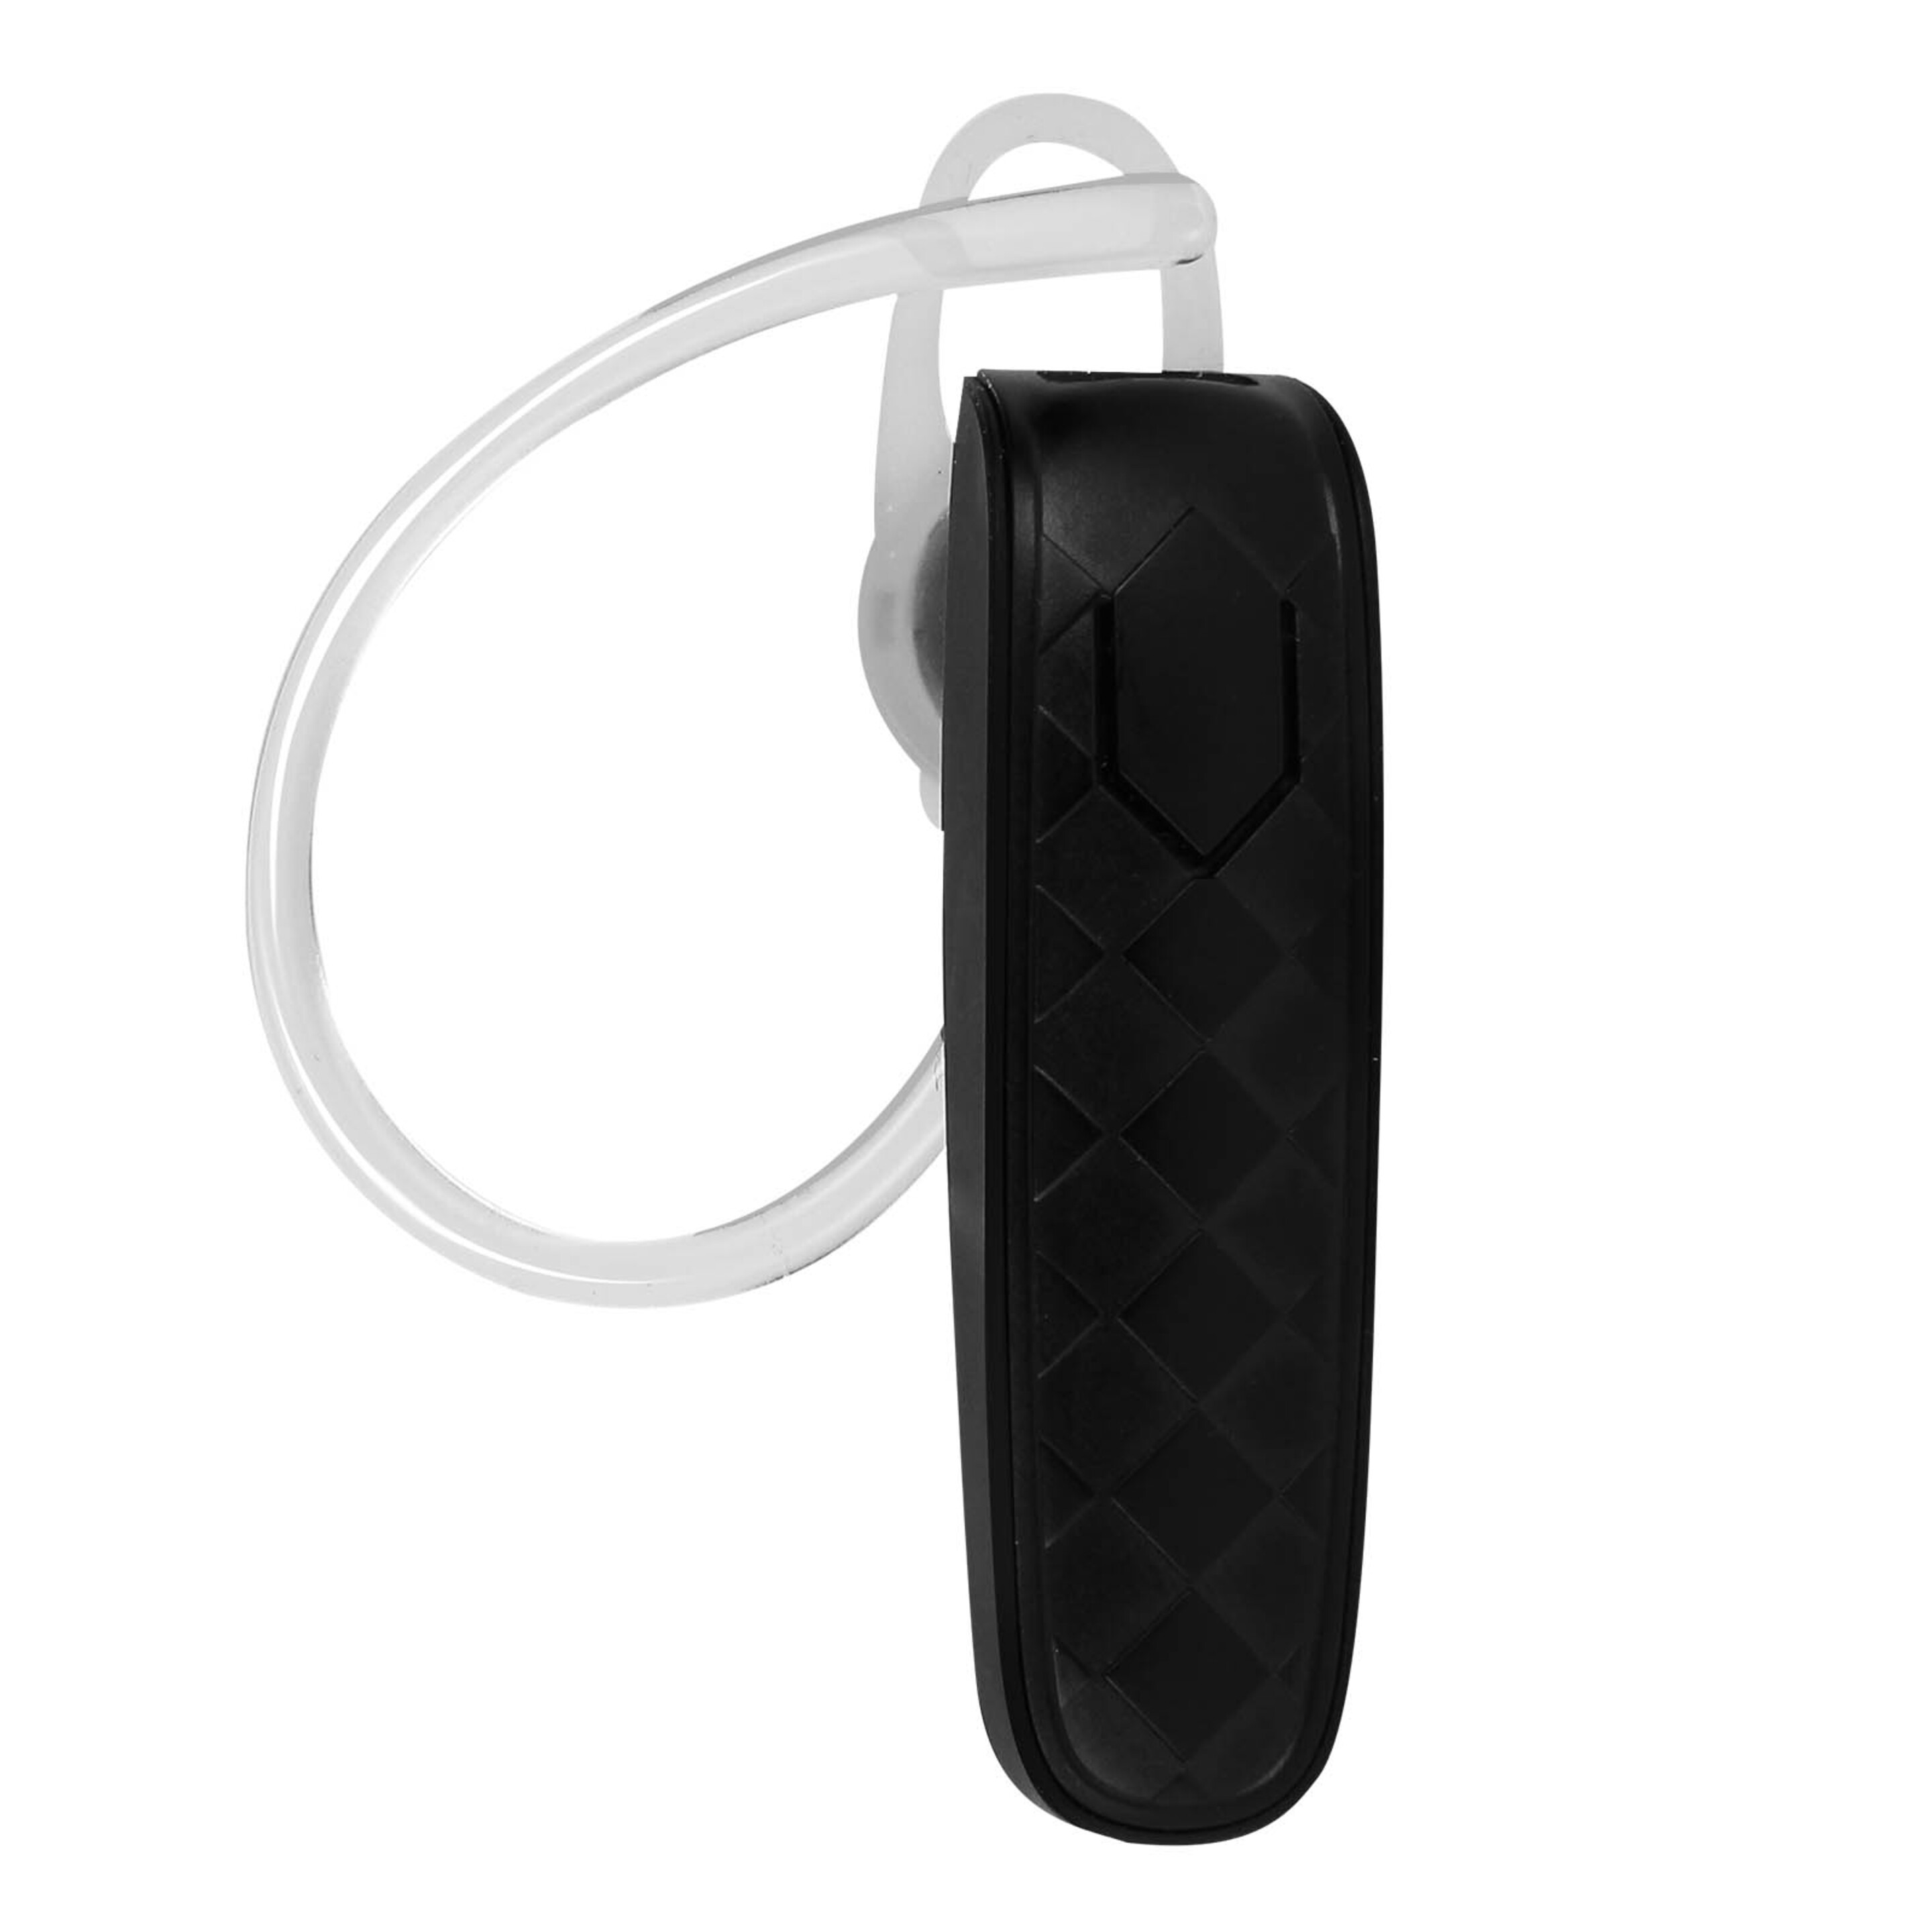 Auricular Manos Libres Bluetooth Splendore Bl-03 Inkax Reducción Ruido